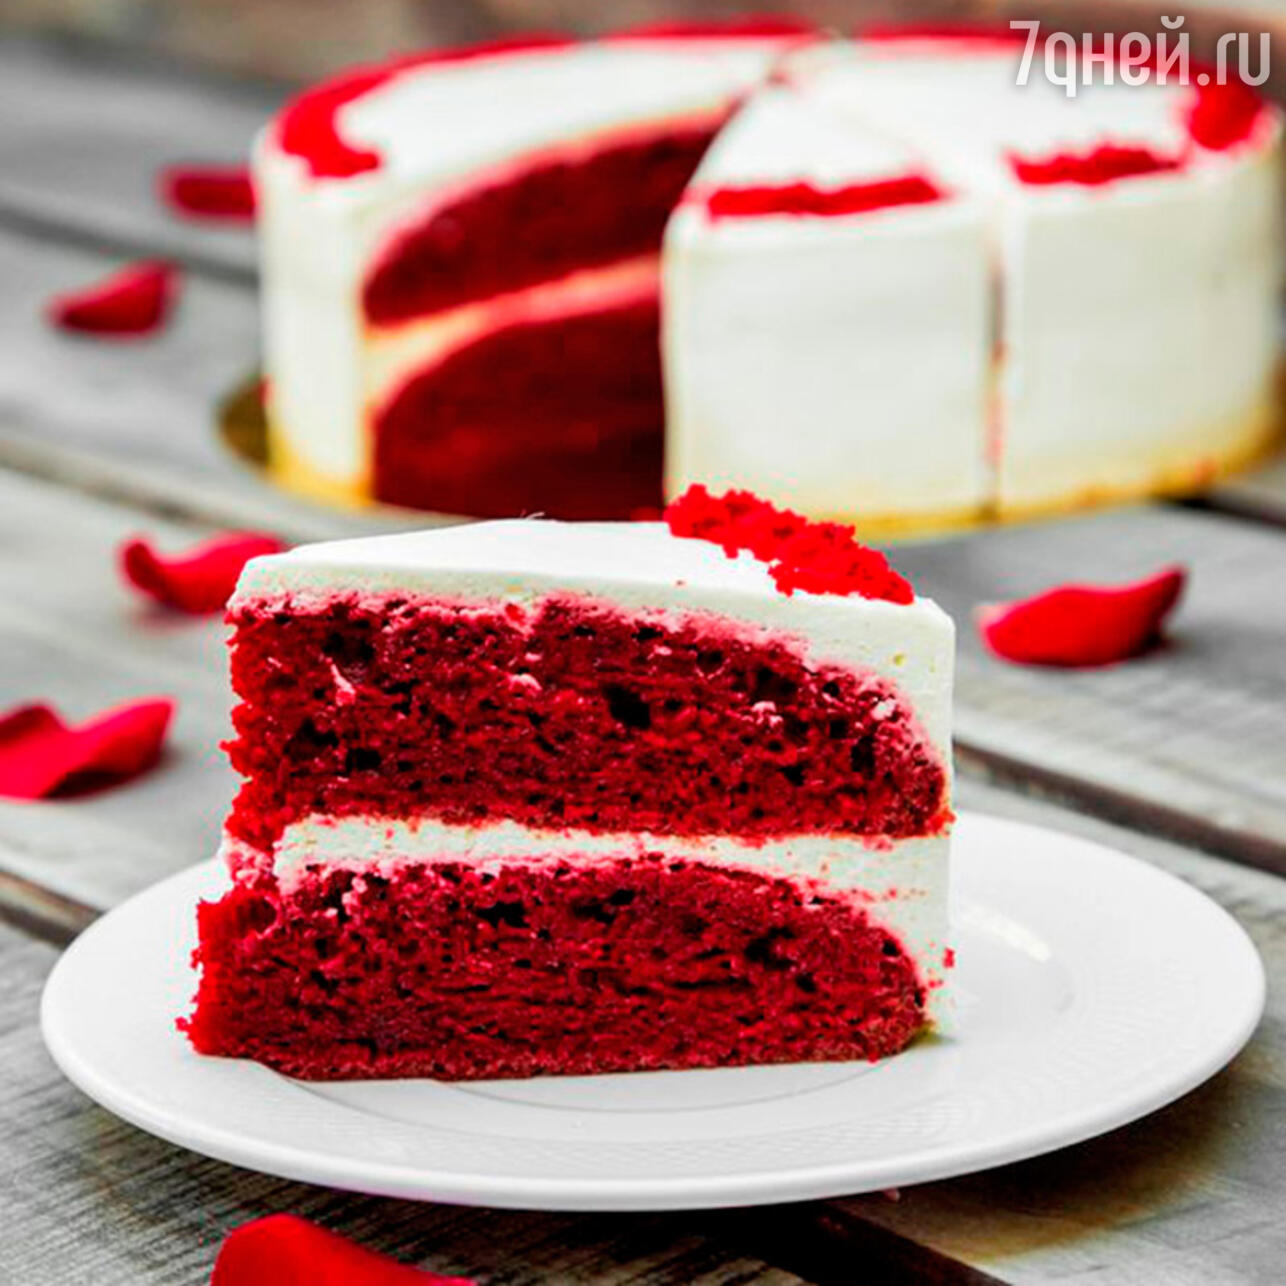 Бисквитный торт: рецепт полезного десерта от Наташи Давыдовой